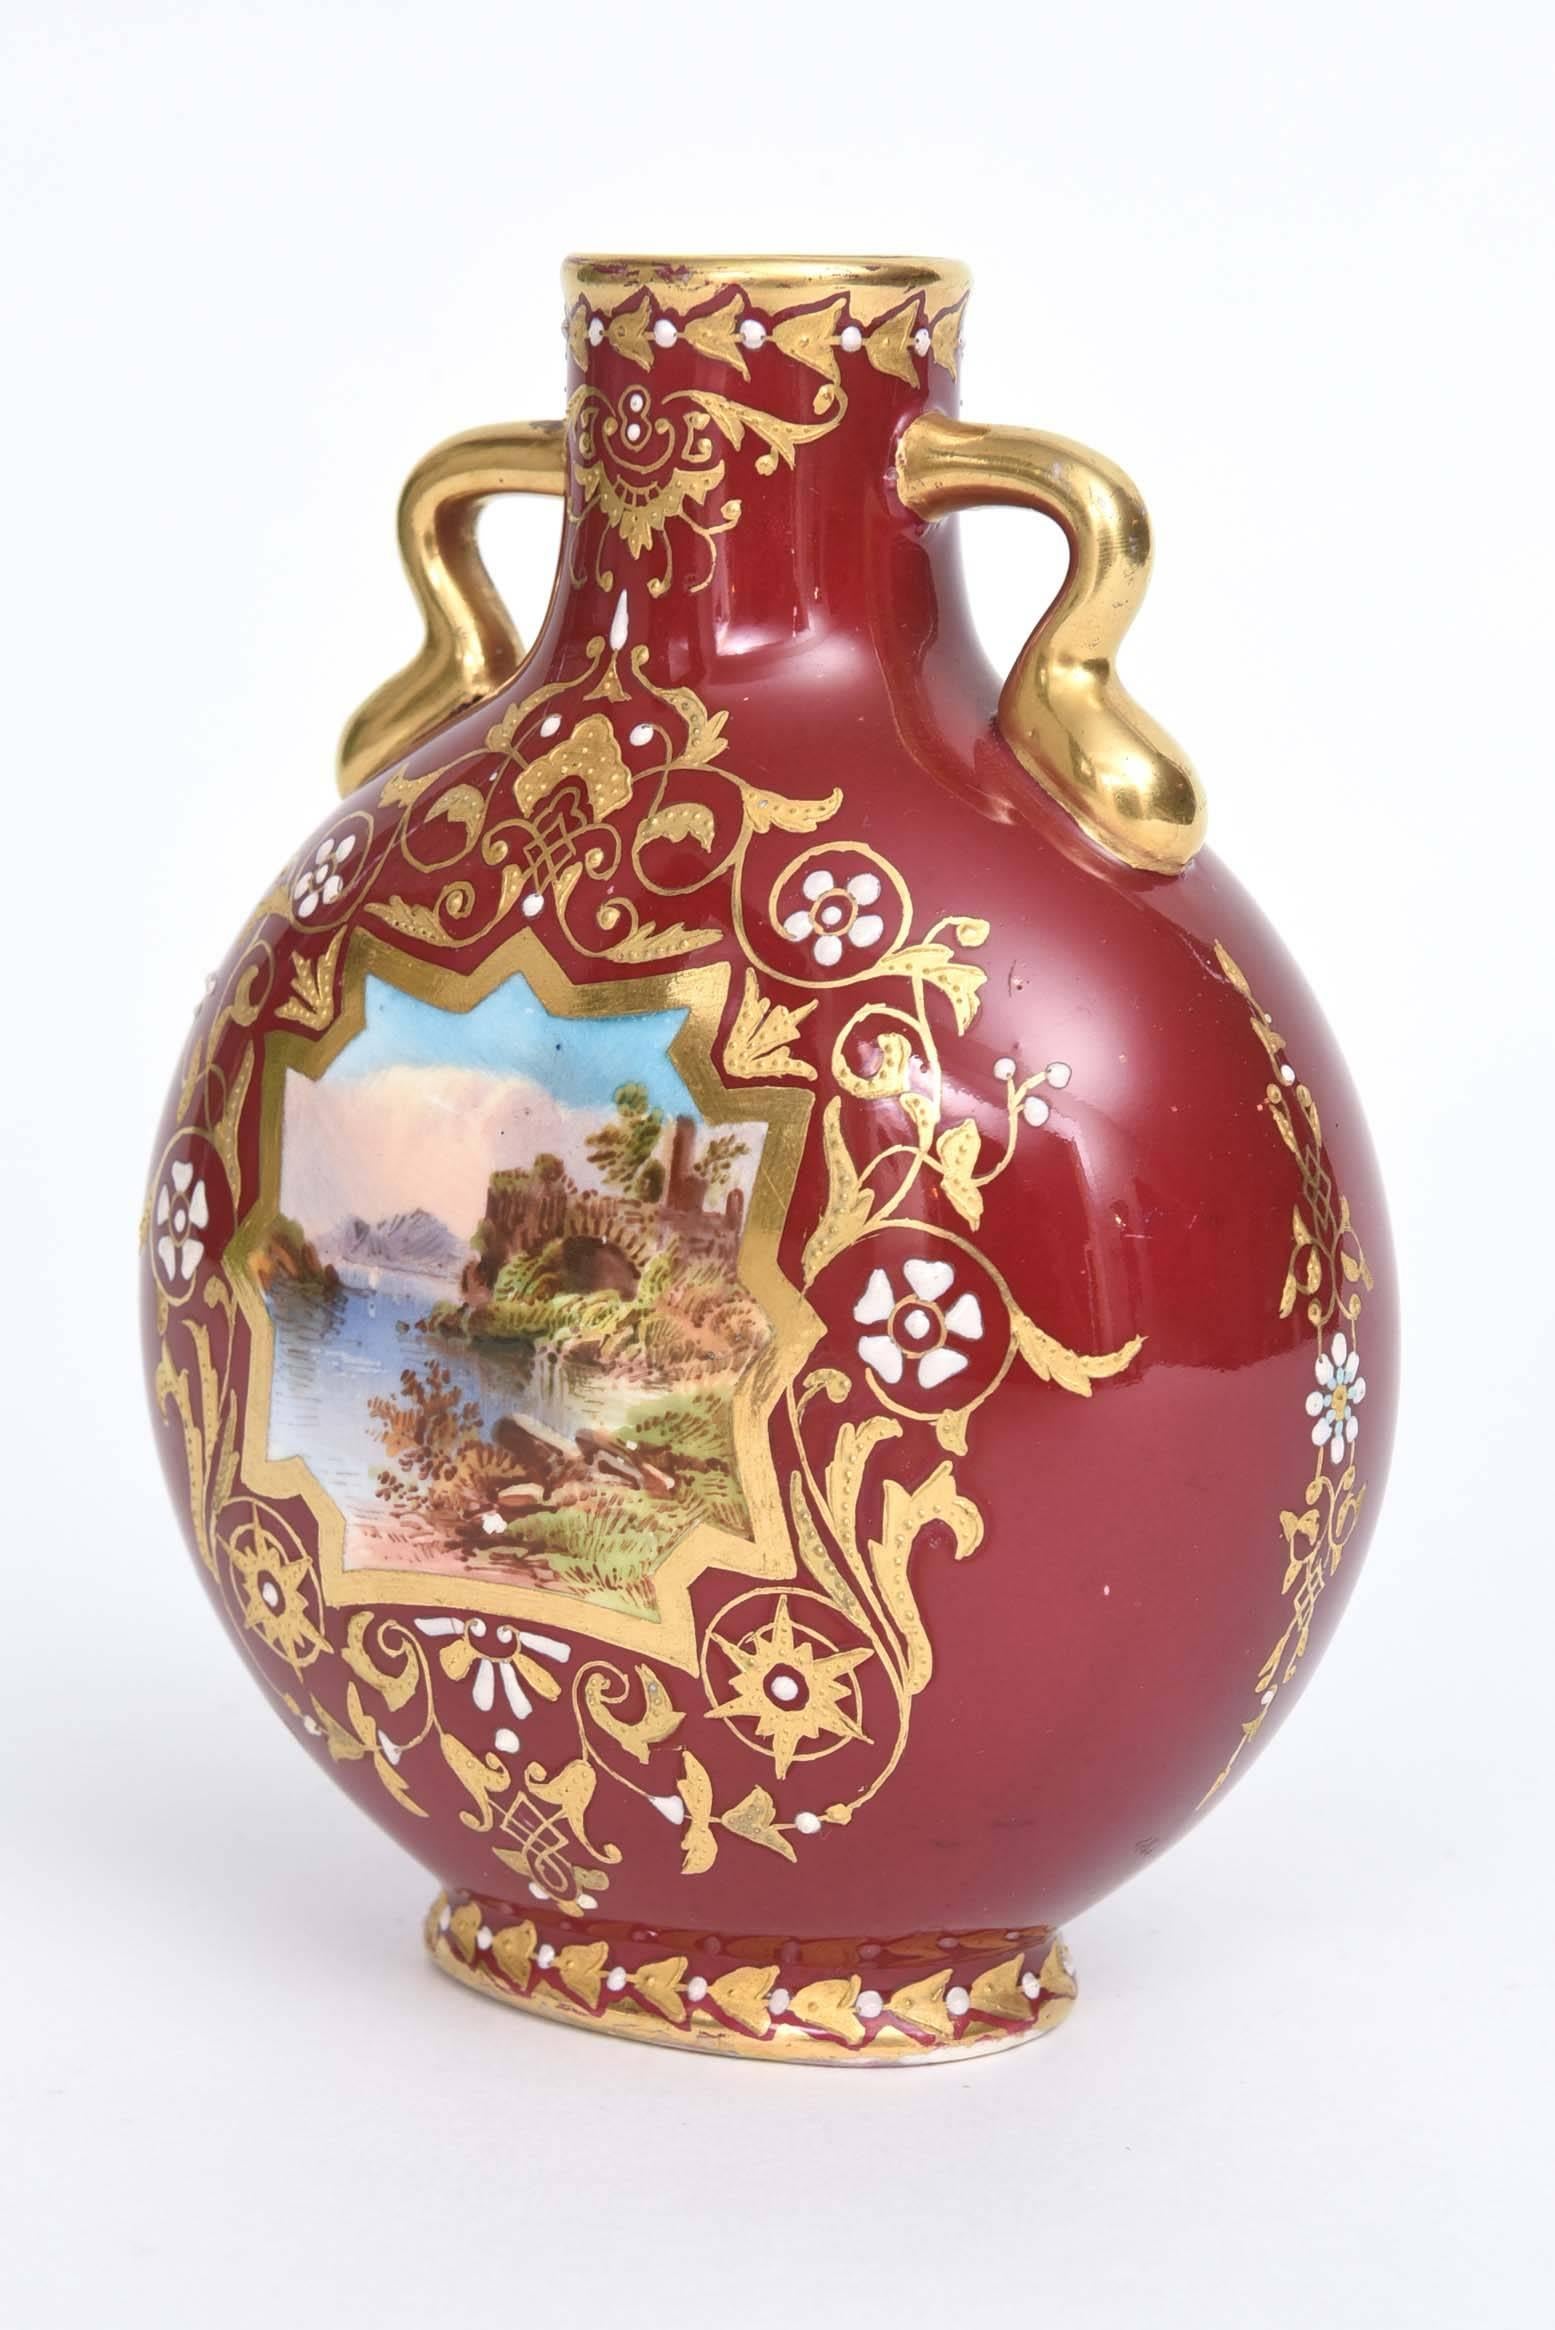 Eine charmante Vase der englischen Traditionsfirma Coalport. Dieses Schätzchen hat 2 Griffe und eine interessante handgemalte Szene mit Fluss, Bergen, Flora und Fauna, akzentuiert mit weißen Juwelen und erhabener, nachgearbeiteter Vergoldung auf